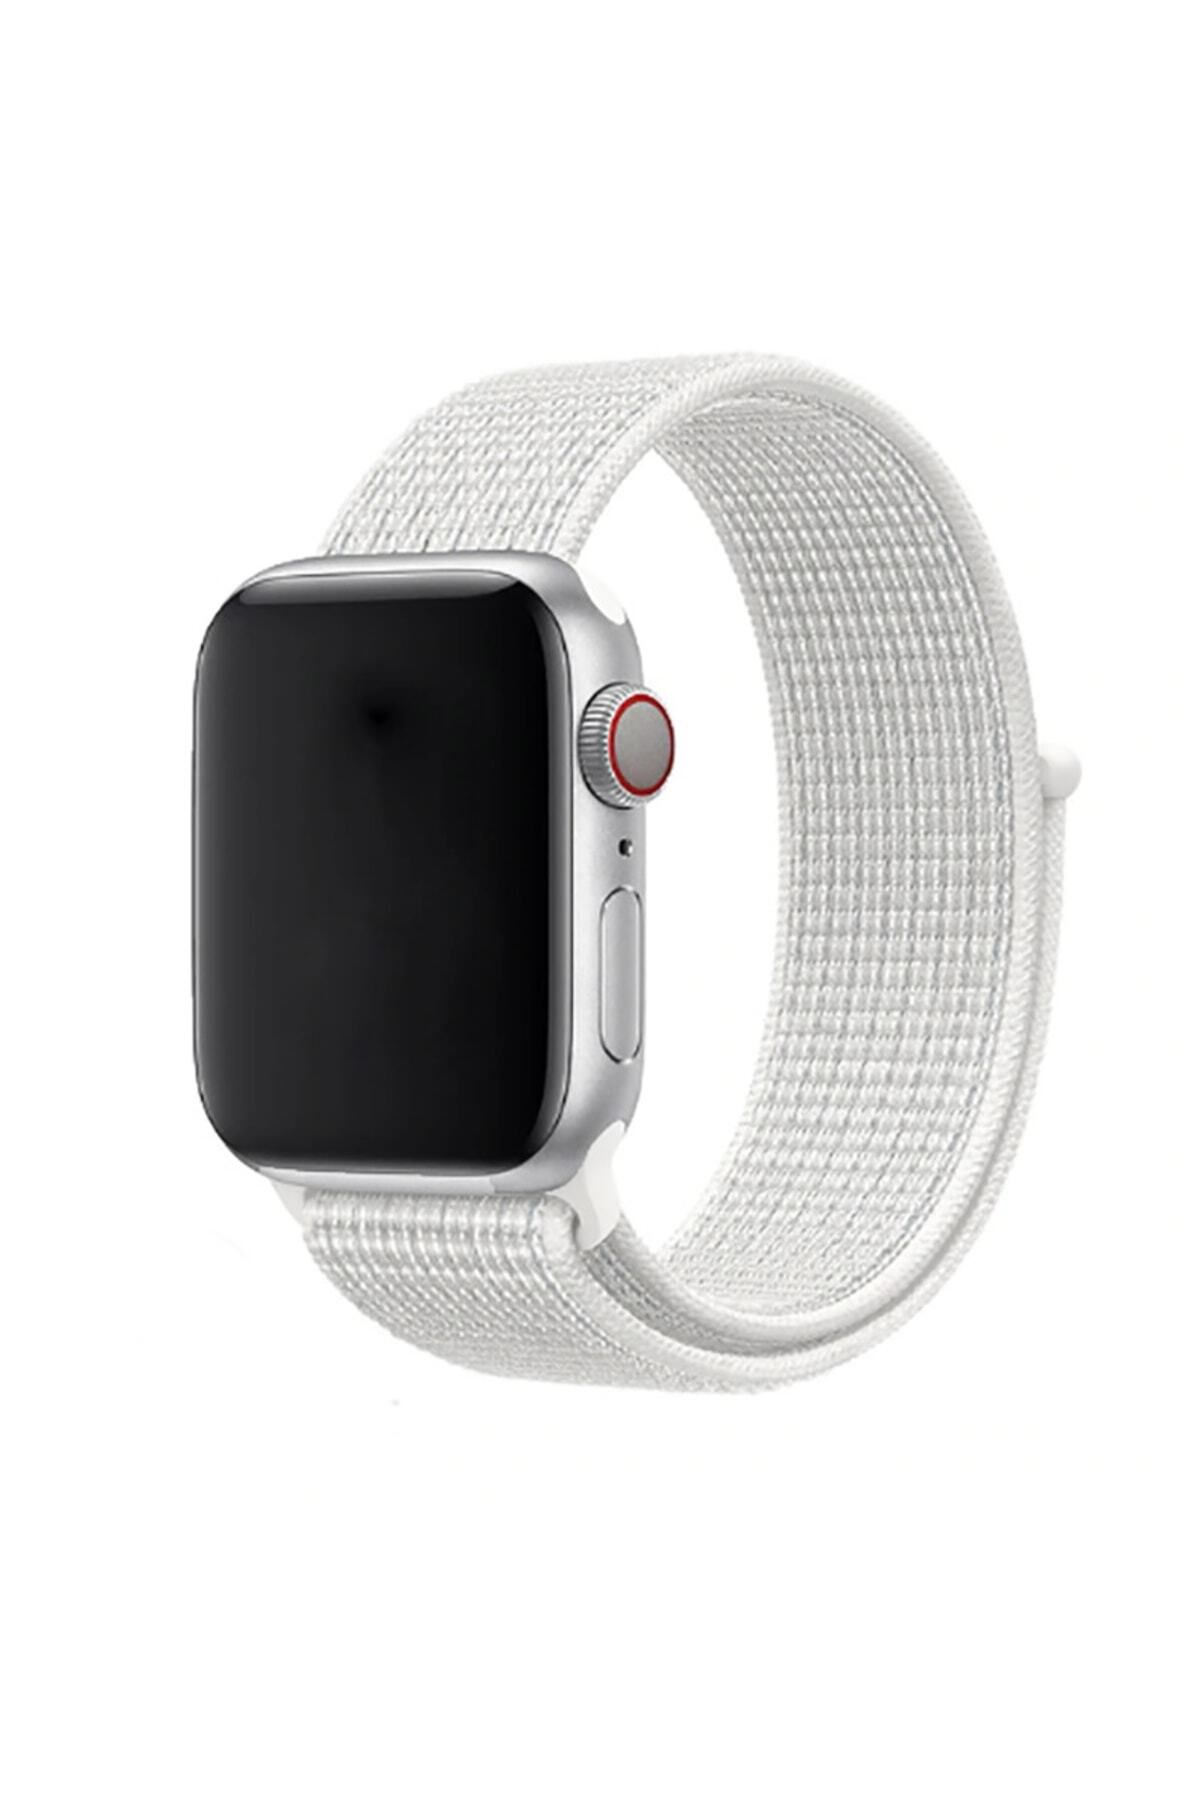 hzrteknoloji Apple Watch 42mm Için Uyumlu Krd-03 Hasır Kordon Akıllı Saat Bileklik Kayışı Kordonu